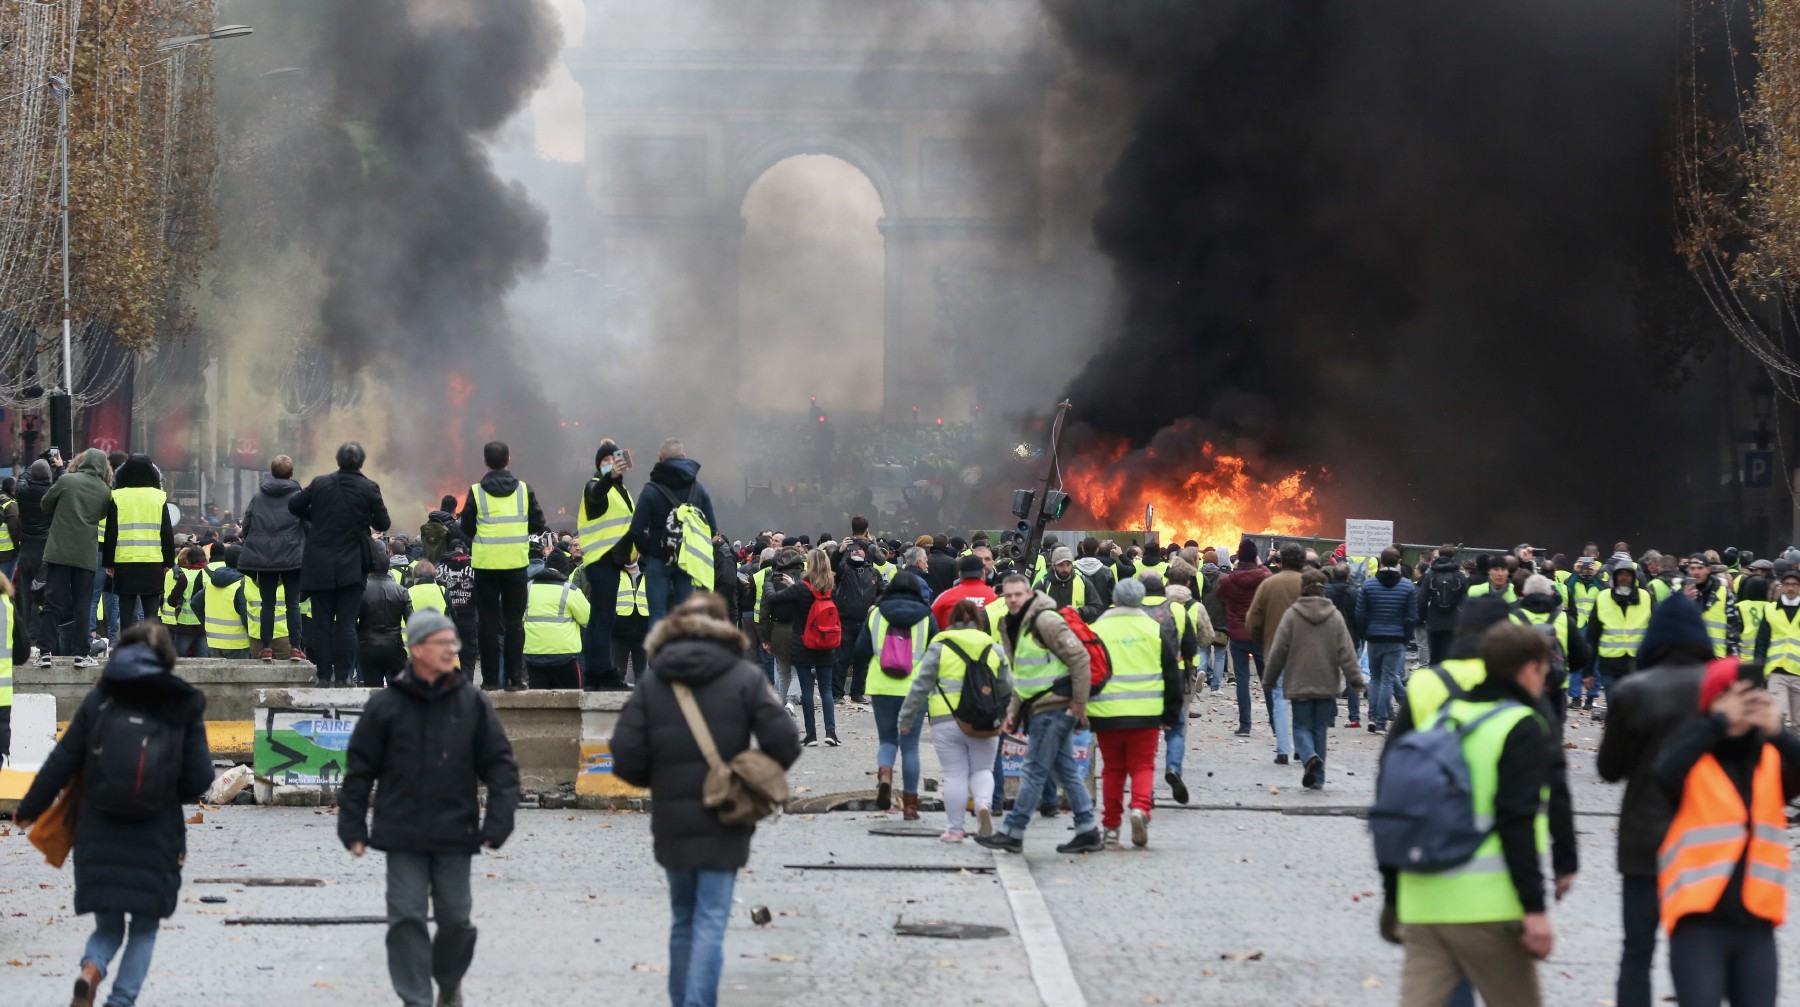 Dailystorm - При освещении протестов в Париже пострадала съемочная группа RT и стрингер видеоагентства Ruptly